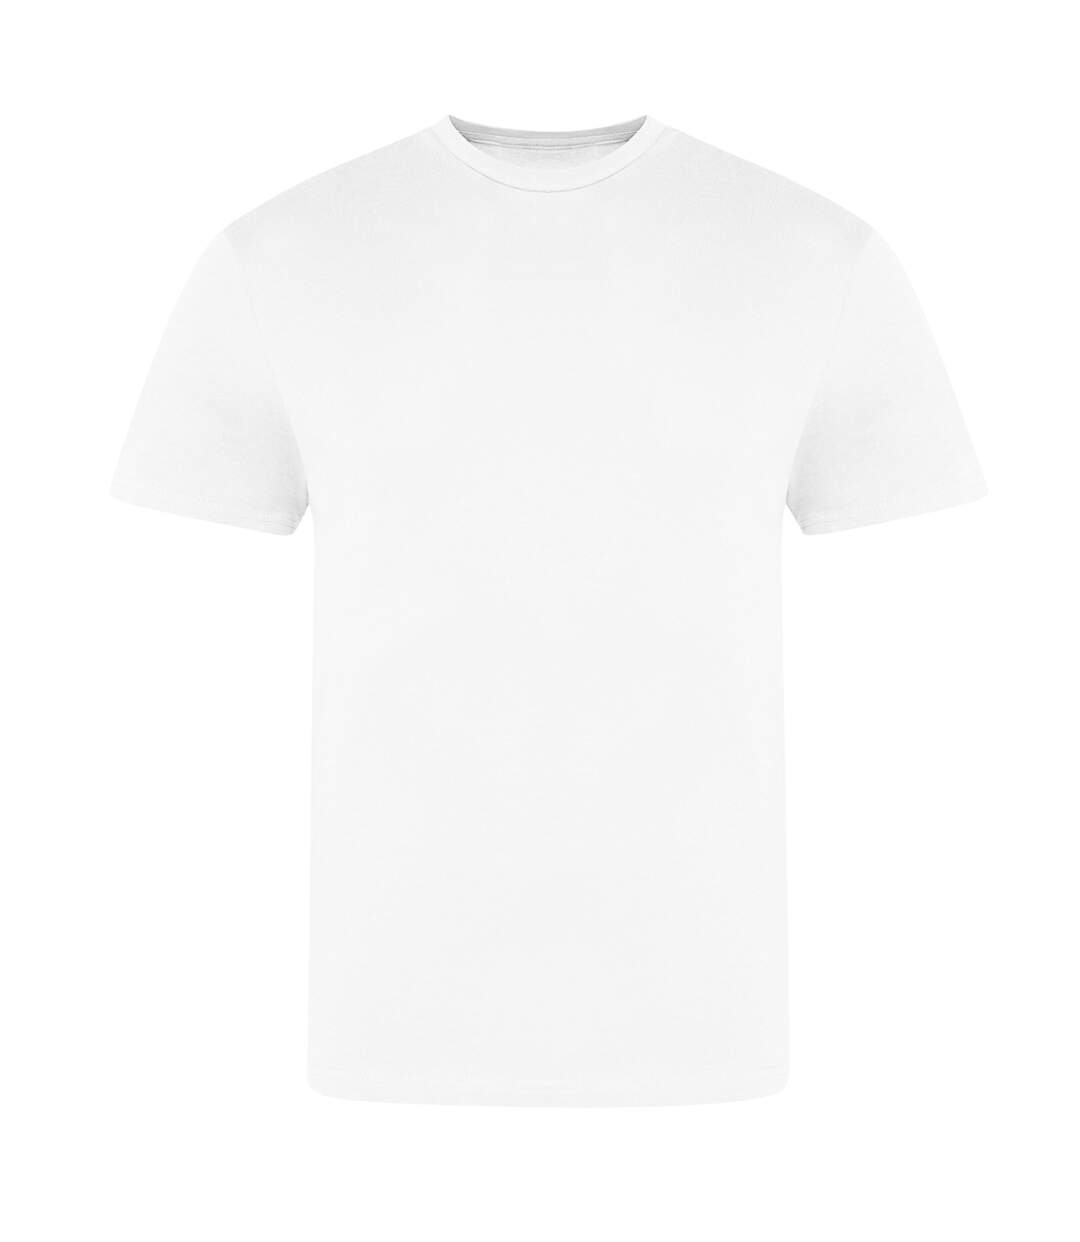 Awdis T-Shirt unisexe adulte The 100 (Blanc) - UTRW7727